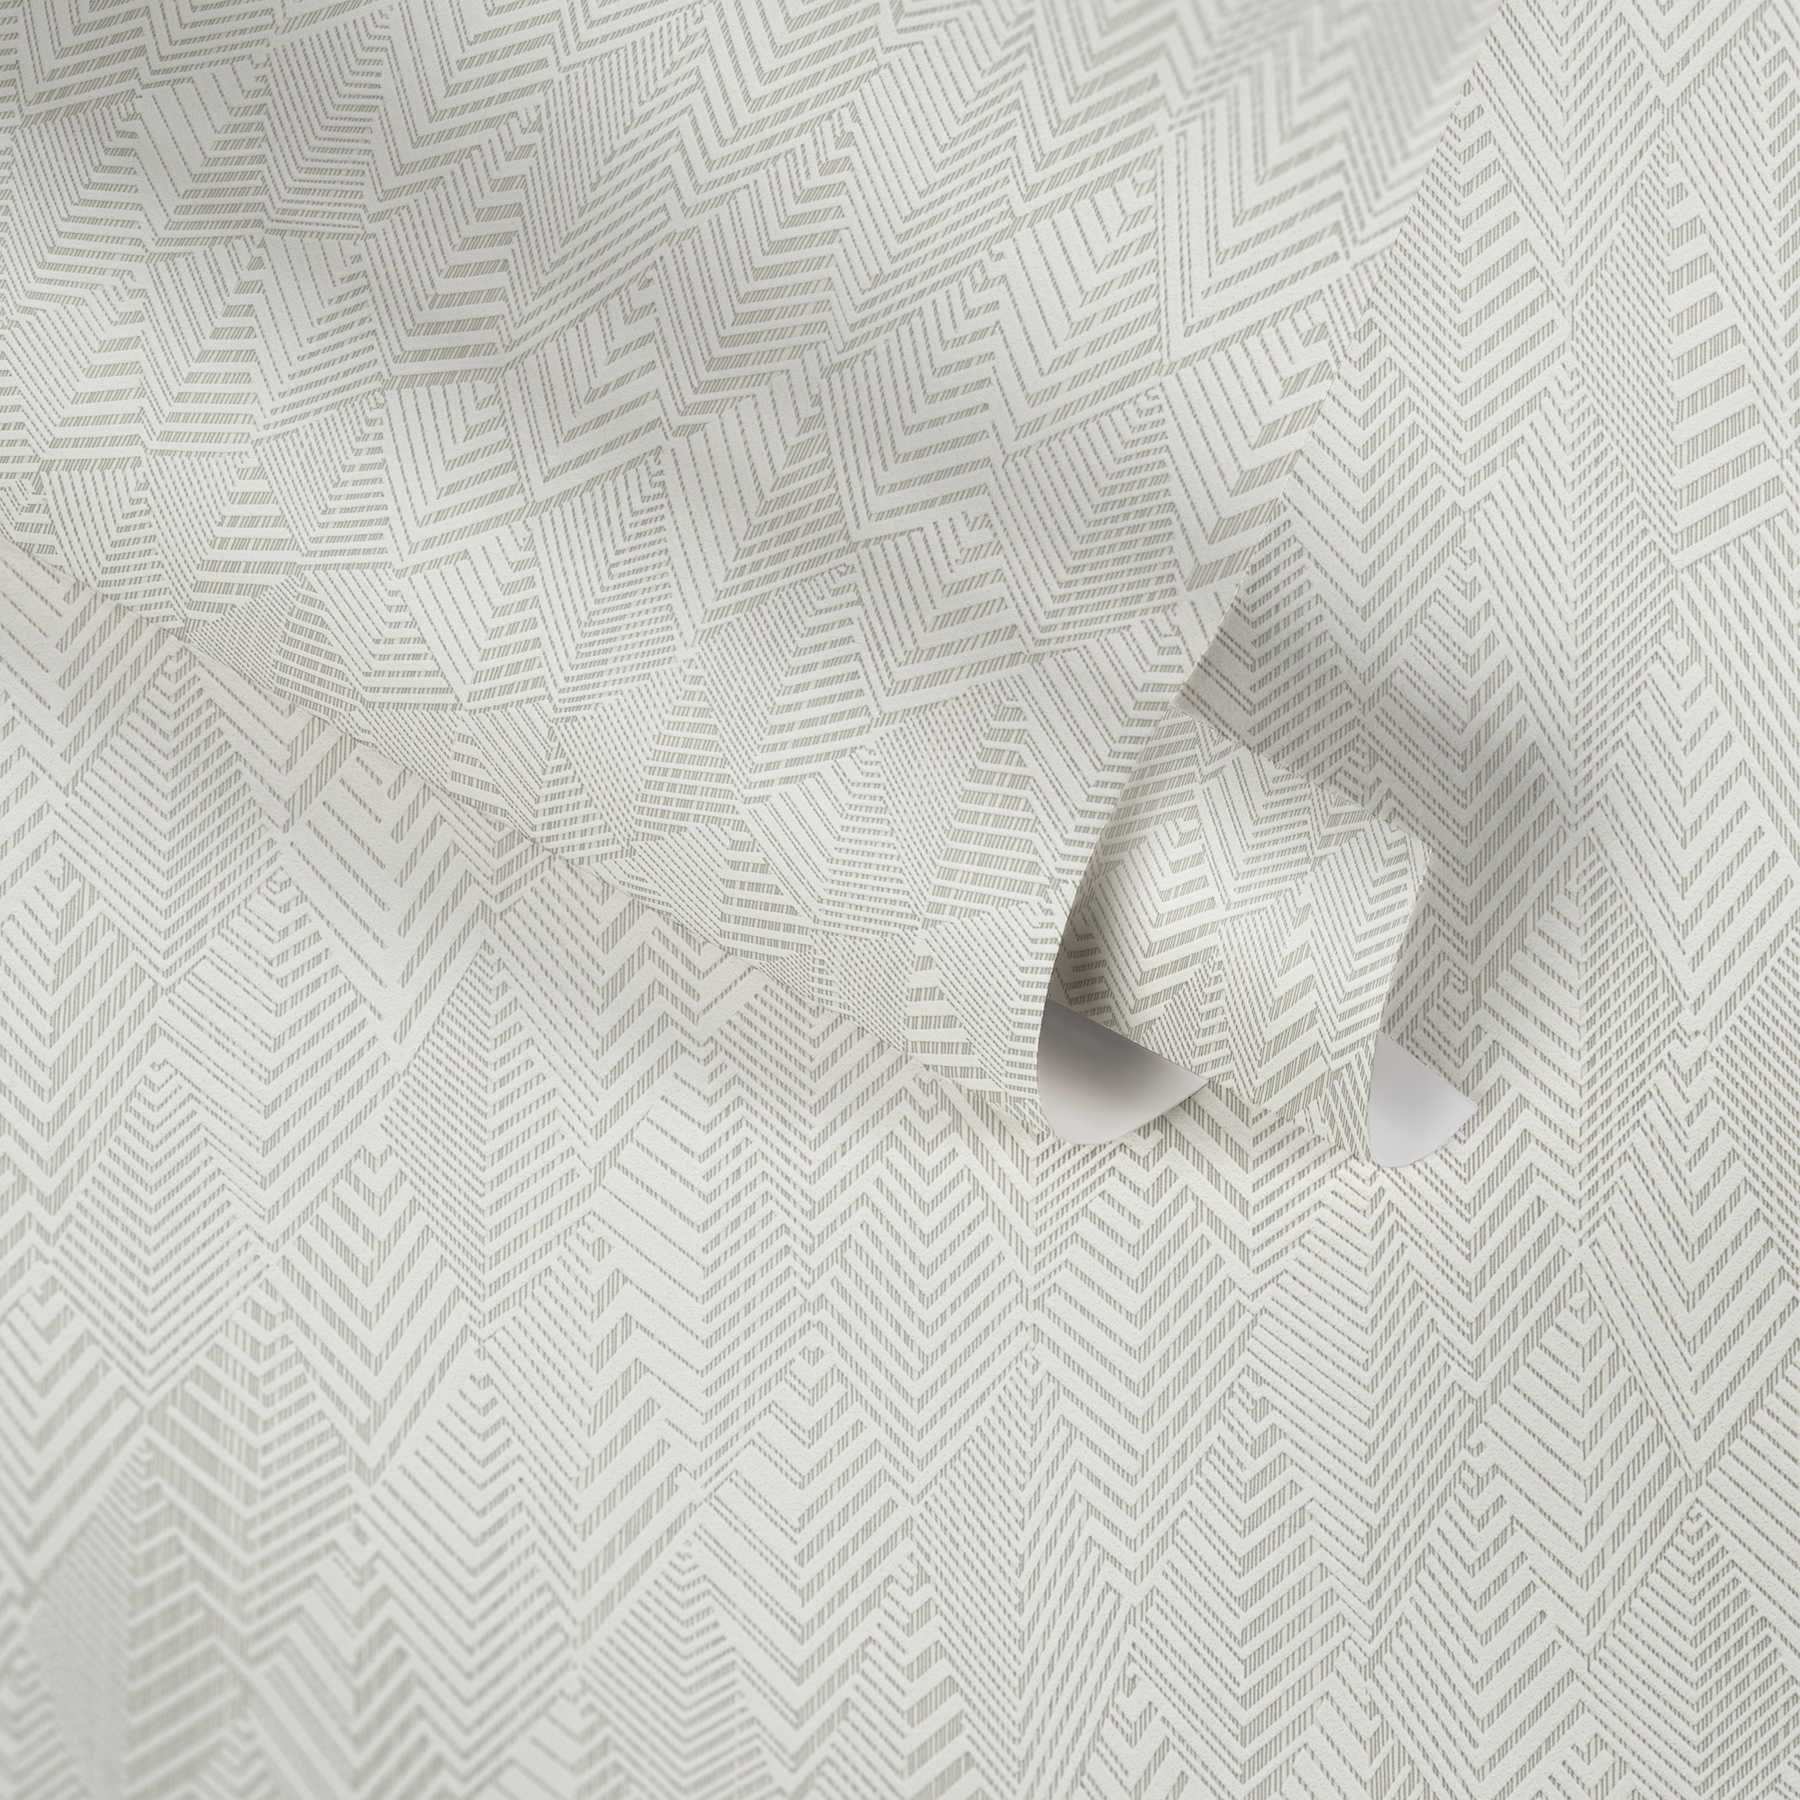             Eenheidsbehang met abstract lijnenspel - crème, wit
        